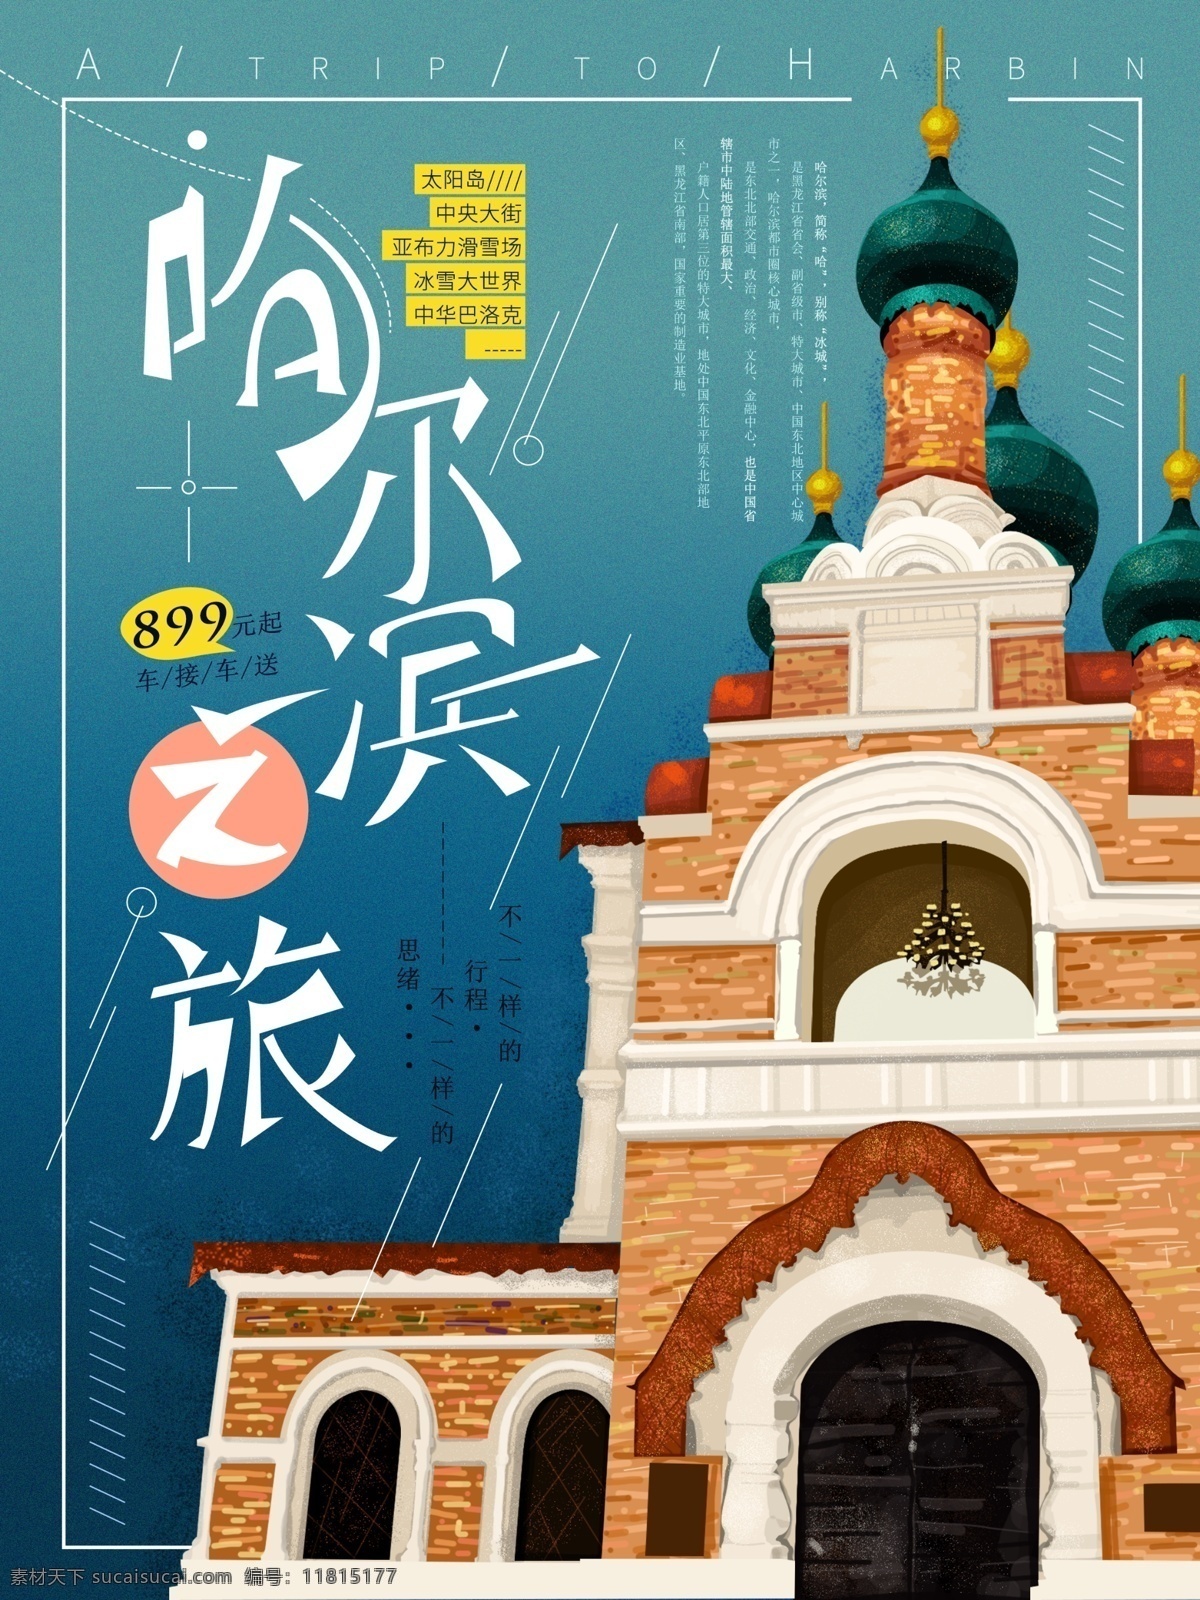 原创 手绘 风景 哈尔滨 简约 海报 建筑 旅游